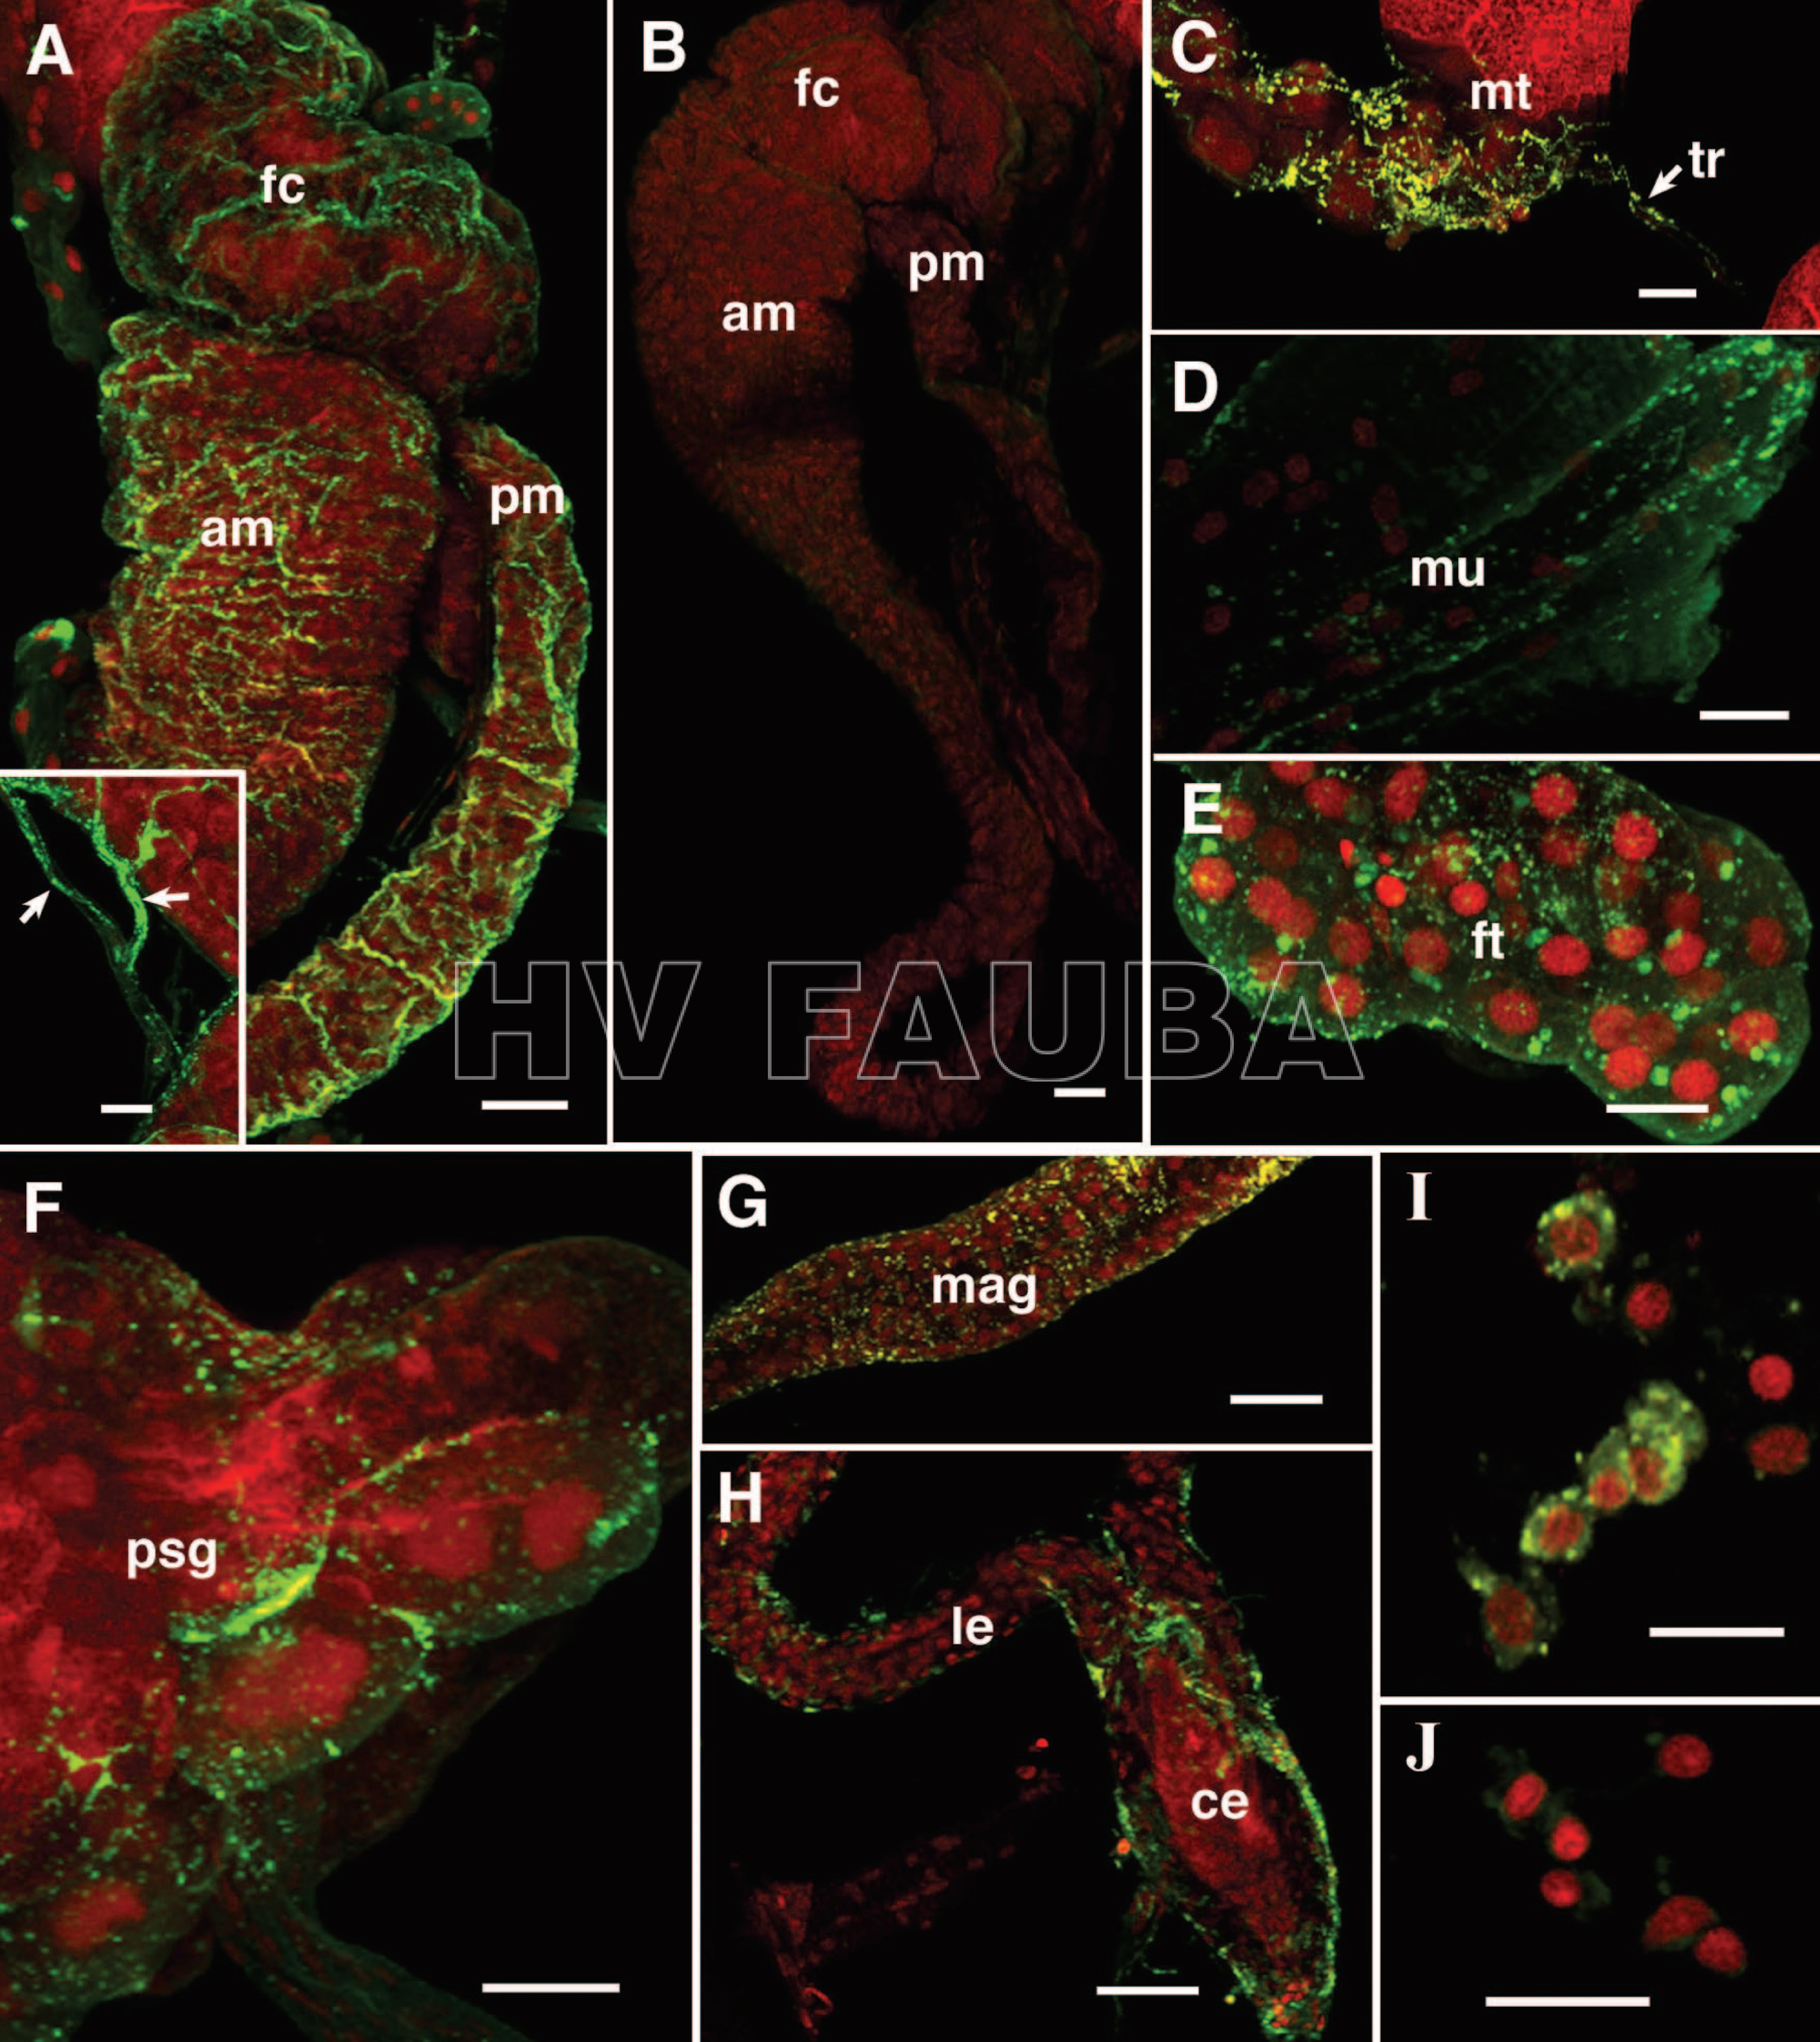 Imágenes confocales (AH) de órganos de montaje de todo el vector D. maidis, 2 a 3 semanas después de la exposición a plantas infectadas con CSS durante 1 semana, inmunomarcadas para CSS con Alexa Fluor (fluorescencia verde) y teñidas para núcleos con yoduro de propidio (rojo). Infectado (A) y control (B). Localización de CSS en la cámara de filtro (fc, filter chamber), intestino medio anterior (am, anterior midgut), intestino medio posterior (pm, posterior midgut) y tráqueas del intestino medio (recuadro, flechas). (CH) Localización de CSS en túbulos de Malpighi (mt, Malpighian tubules) y tráqueas asociadas (tr, associated tracheae), tejido muscular (mu, muscle tissue), tejido adiposo (ft, fat tissue), glándula salival principal (psg, principle salivary gland), glándula accesoria masculina (mag, male accessory gland), Conductos eyaculatorios laterales (le) y comunes (ce). (I y J) Hemocito de fluido corporal de D. maidis infectados (I) y de control (J) teñidos para los núcleos (rojo) e inmunomarcados para CSS (fluorescencia verde). Barras de escala, 50 uM (A, B, F, G y H) y 20 uM (A, recuadro; C, D, E, I y J). Autor: Ammar & Hogenhout, 2005